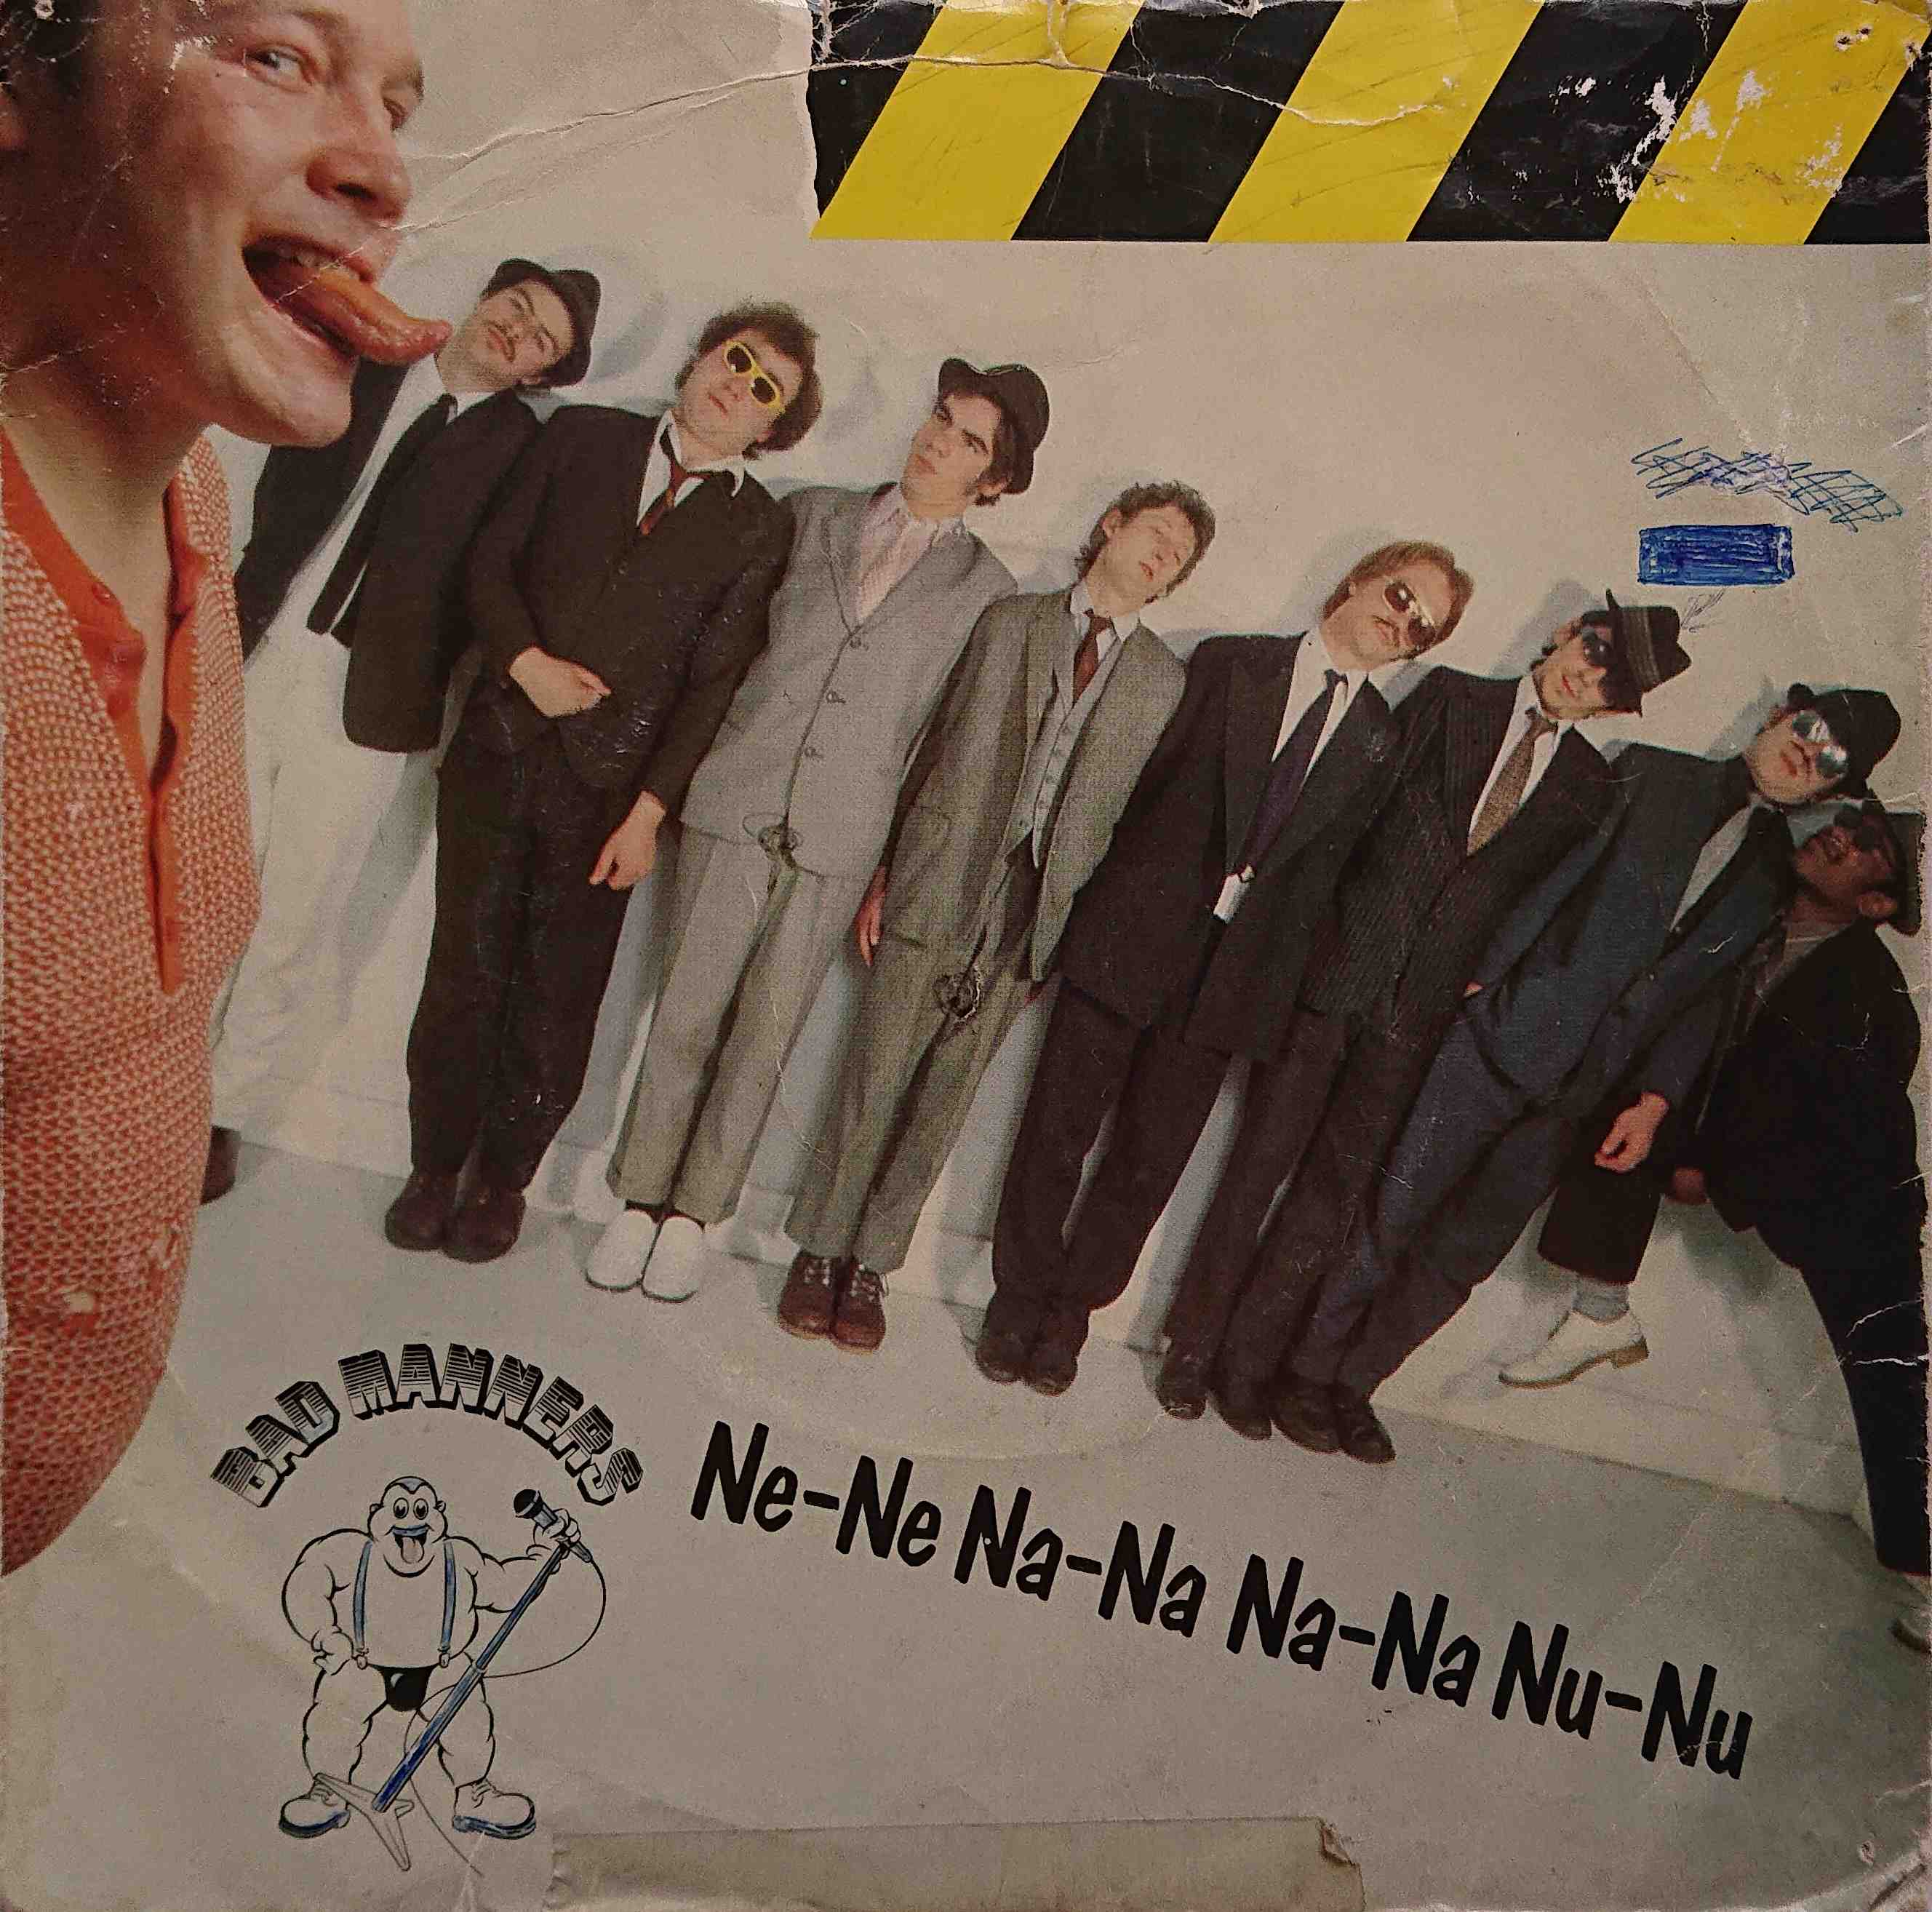 Picture of Ne-ne na-na na-na nu-nu by artist Bad Manners 